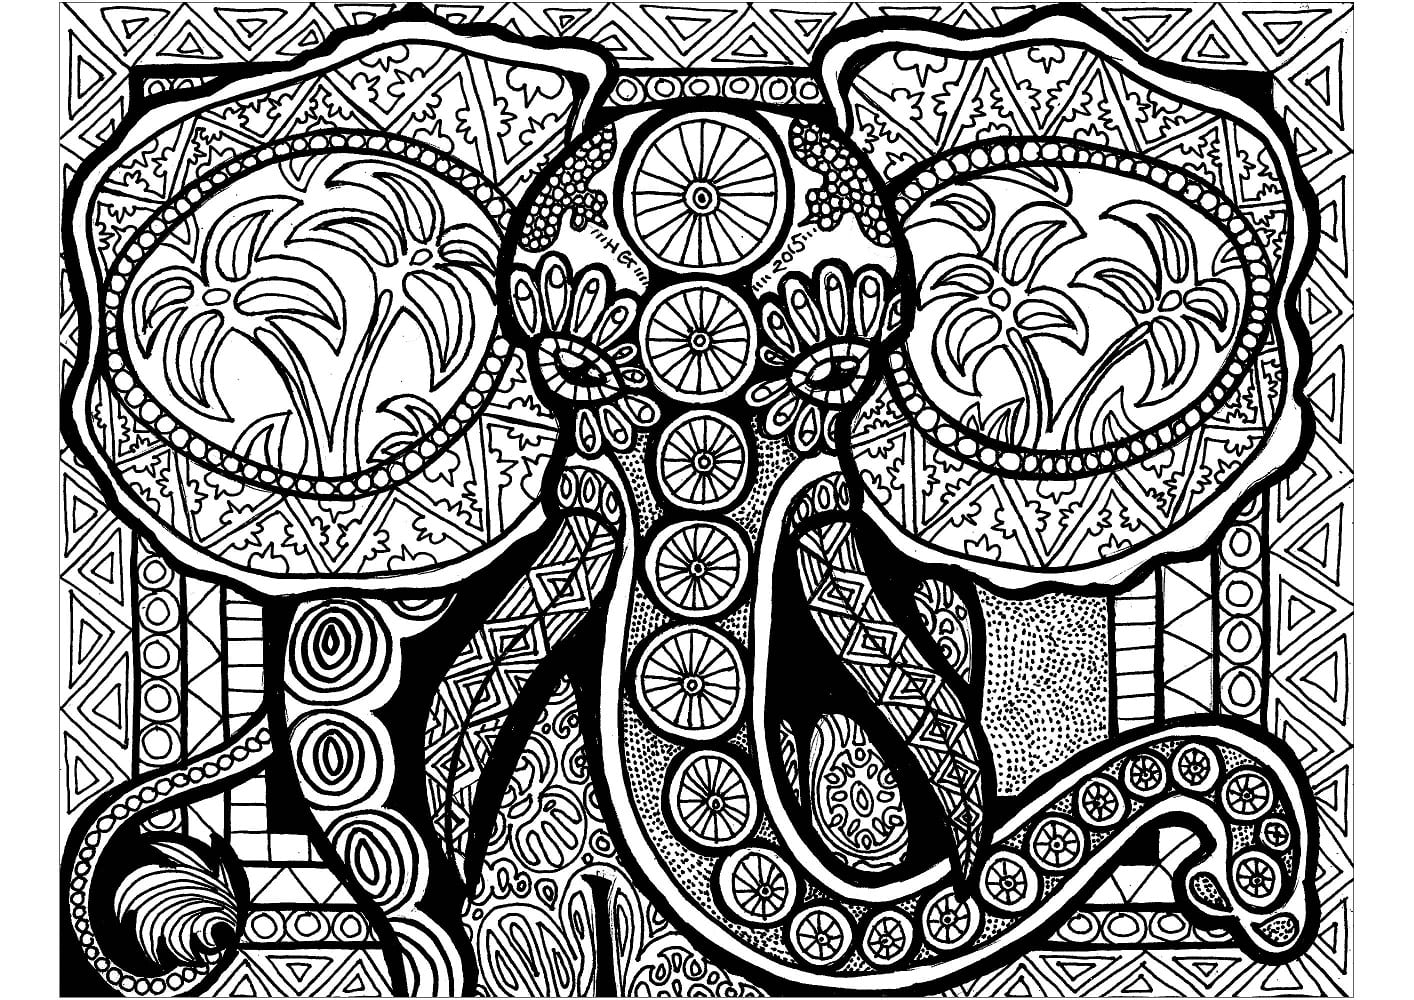 Éléphant Zentangle coloring page